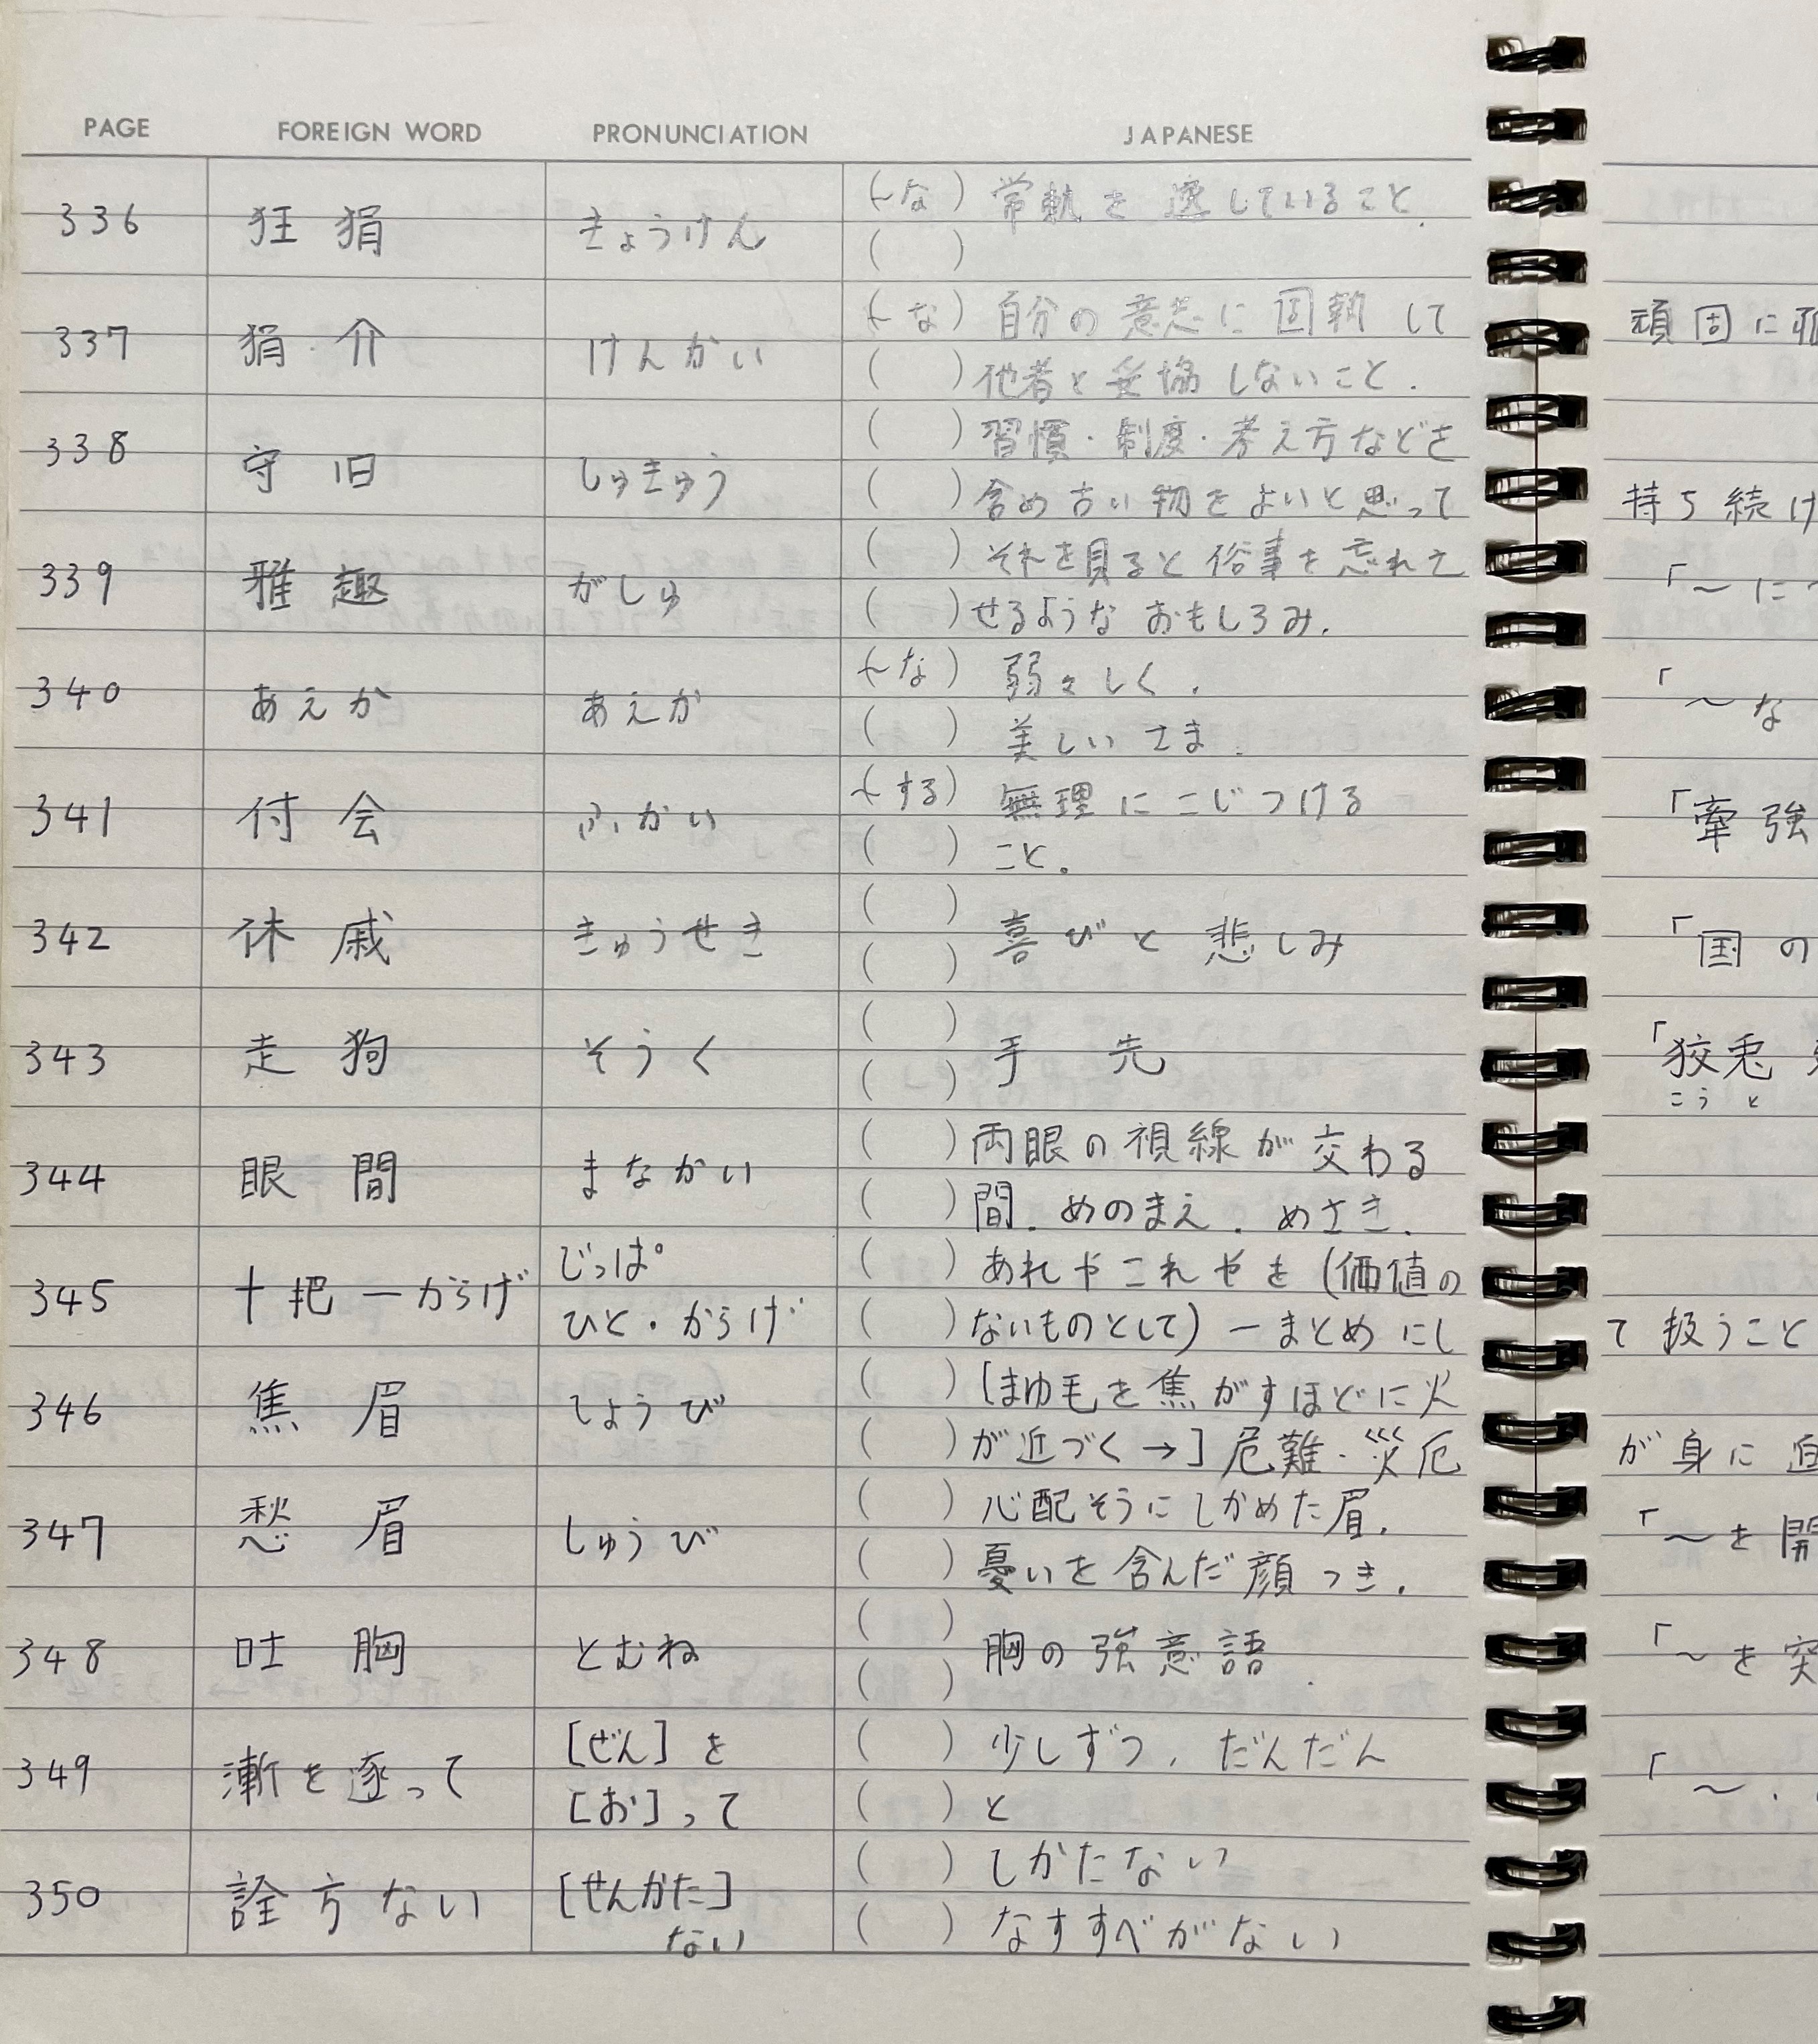 宮崎さんの学生時代の手書きノート